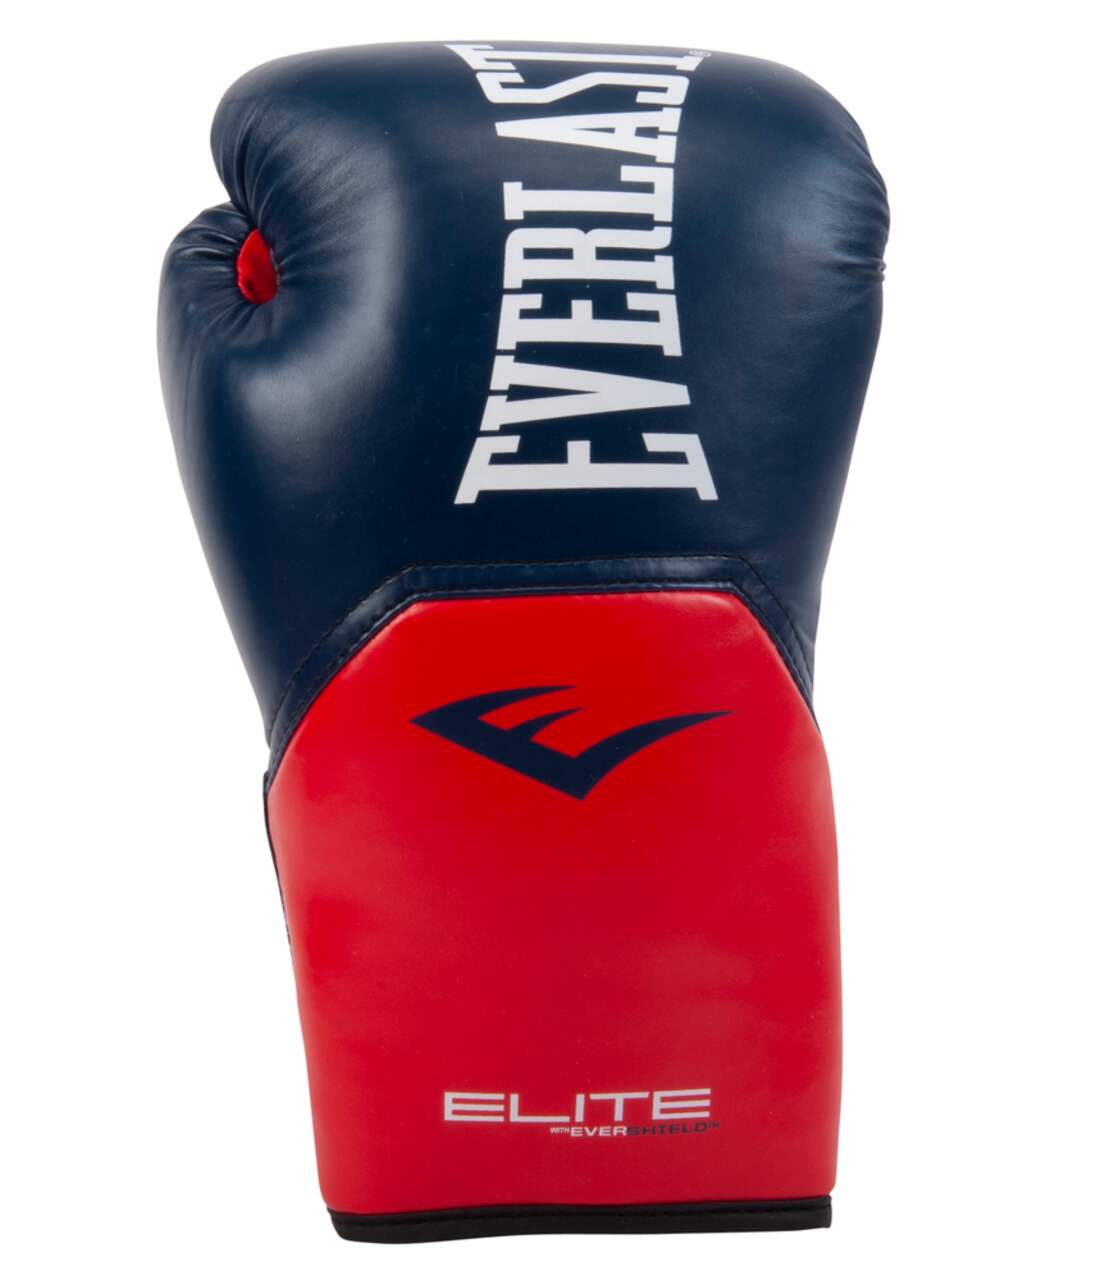 Everlast Elite 2.0 Boxing Gloves, Navy/Red, 14-oz